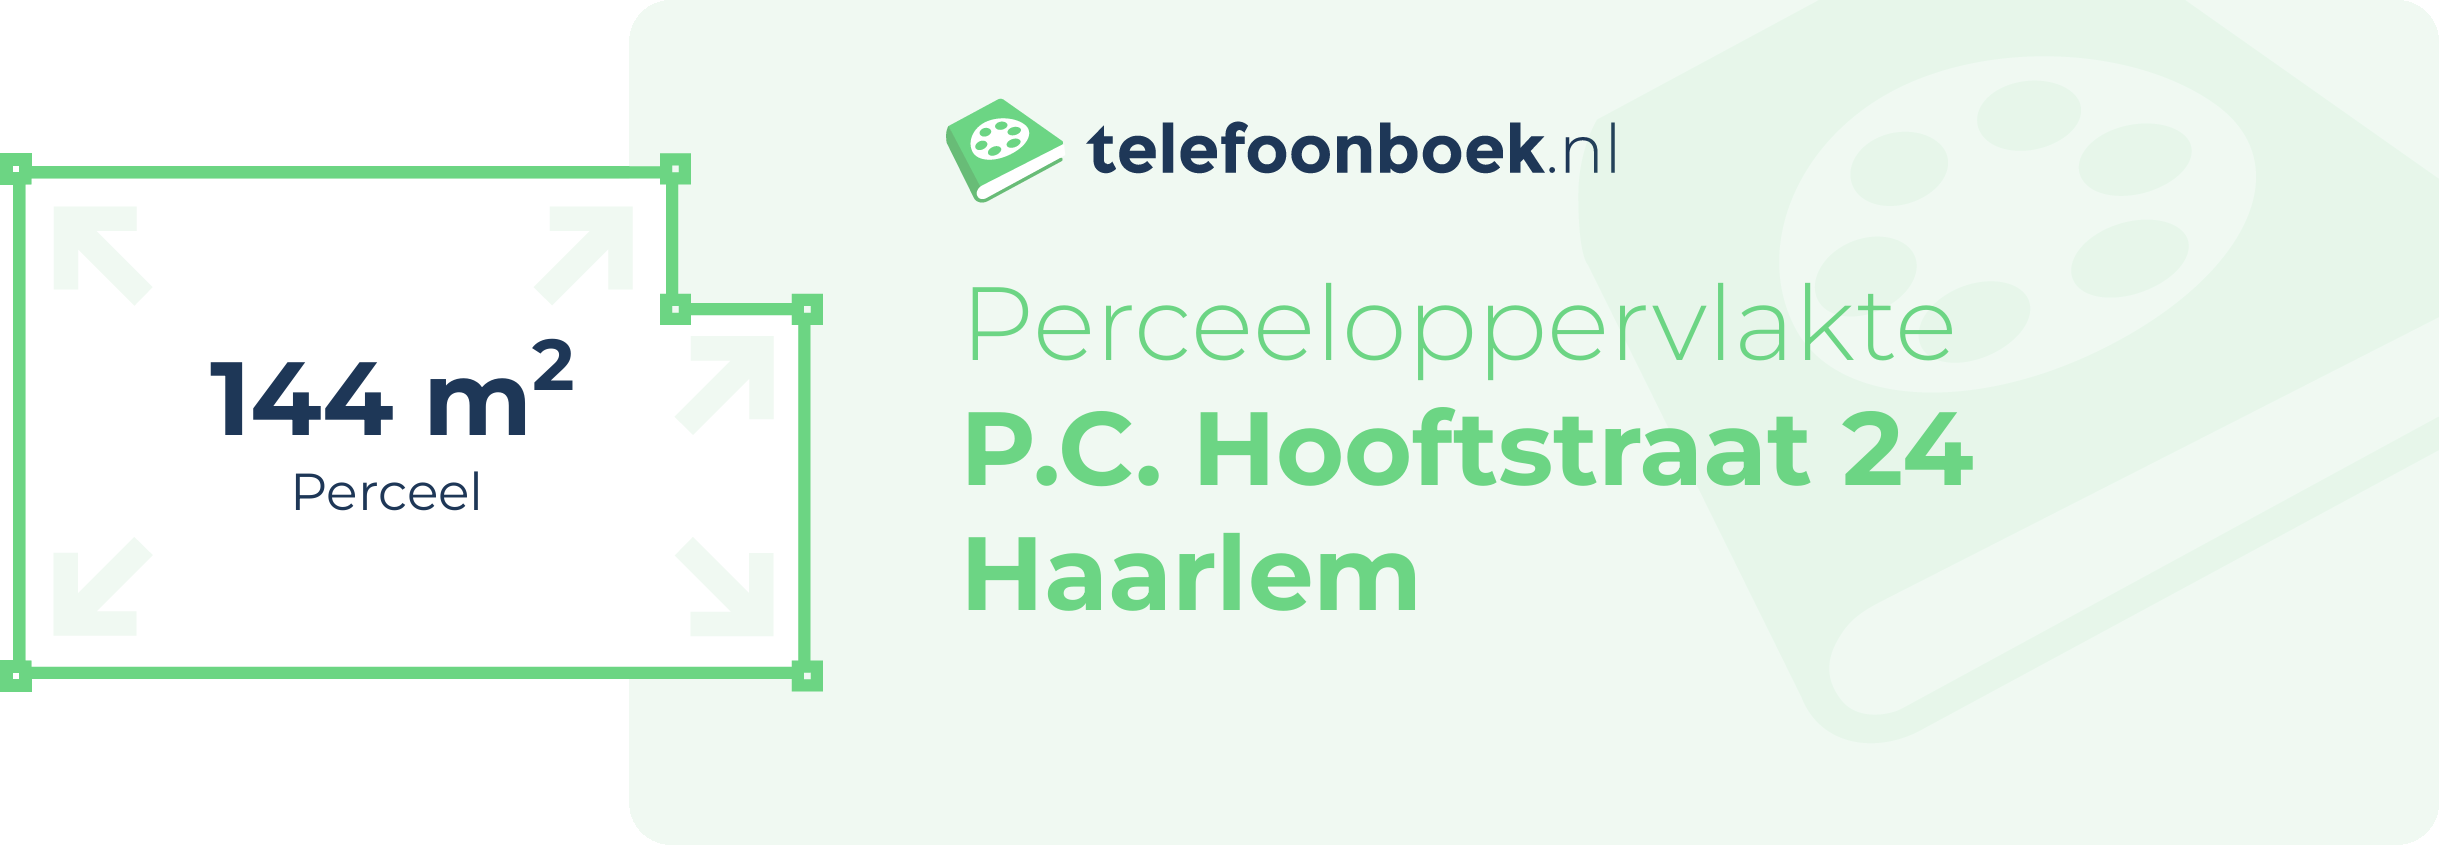 Perceeloppervlakte P.C. Hooftstraat 24 Haarlem